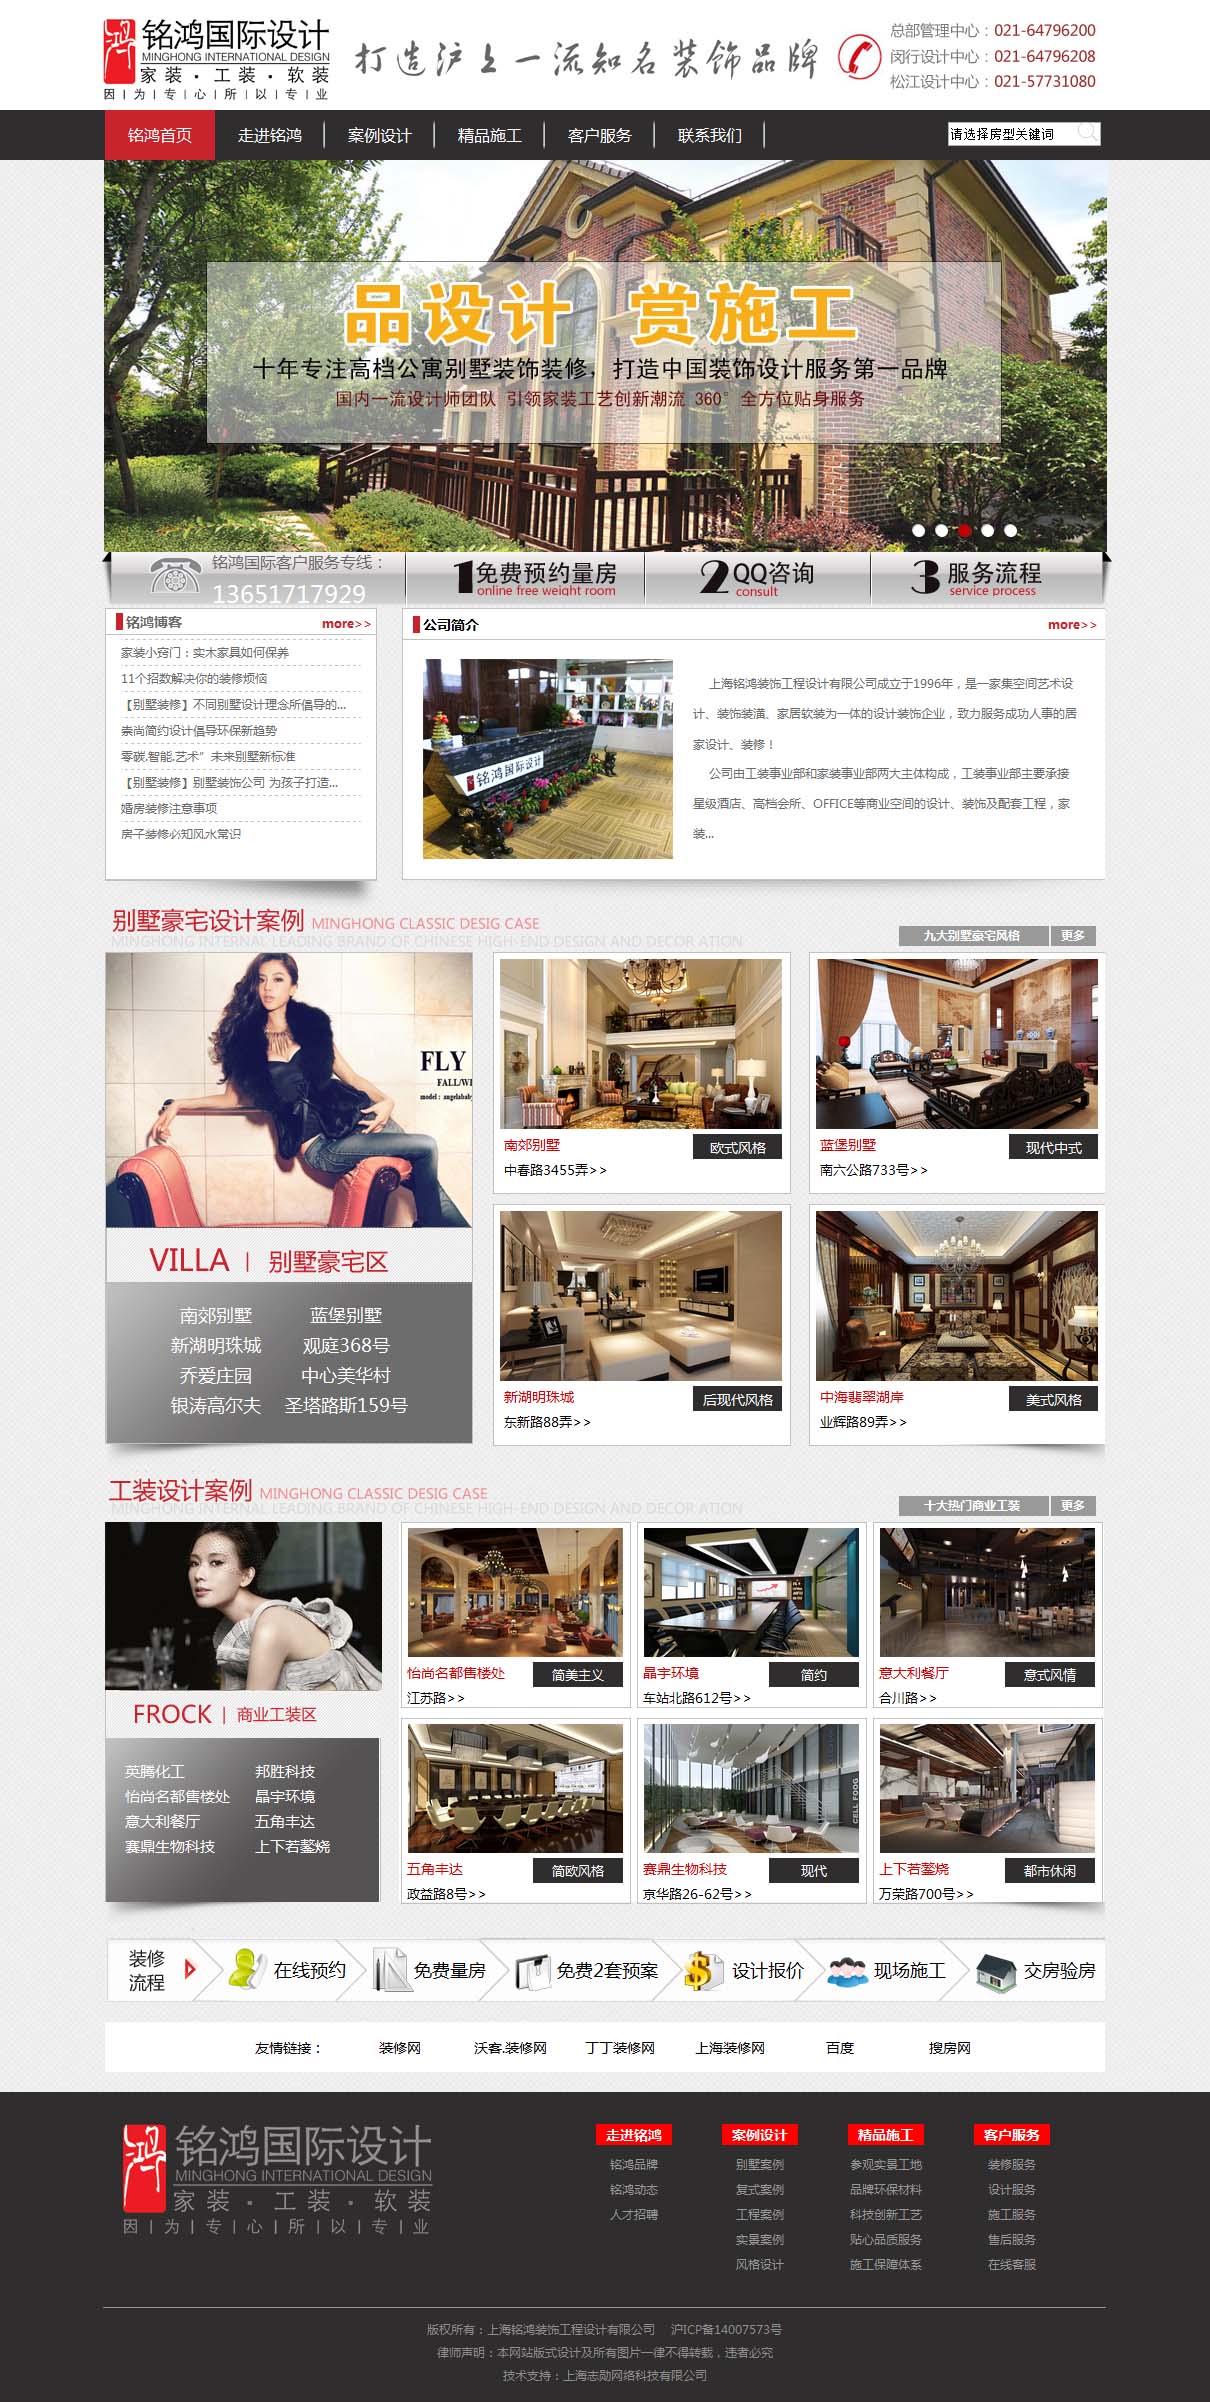 上海铭鸿装饰工程设计有限公司宣传型网站